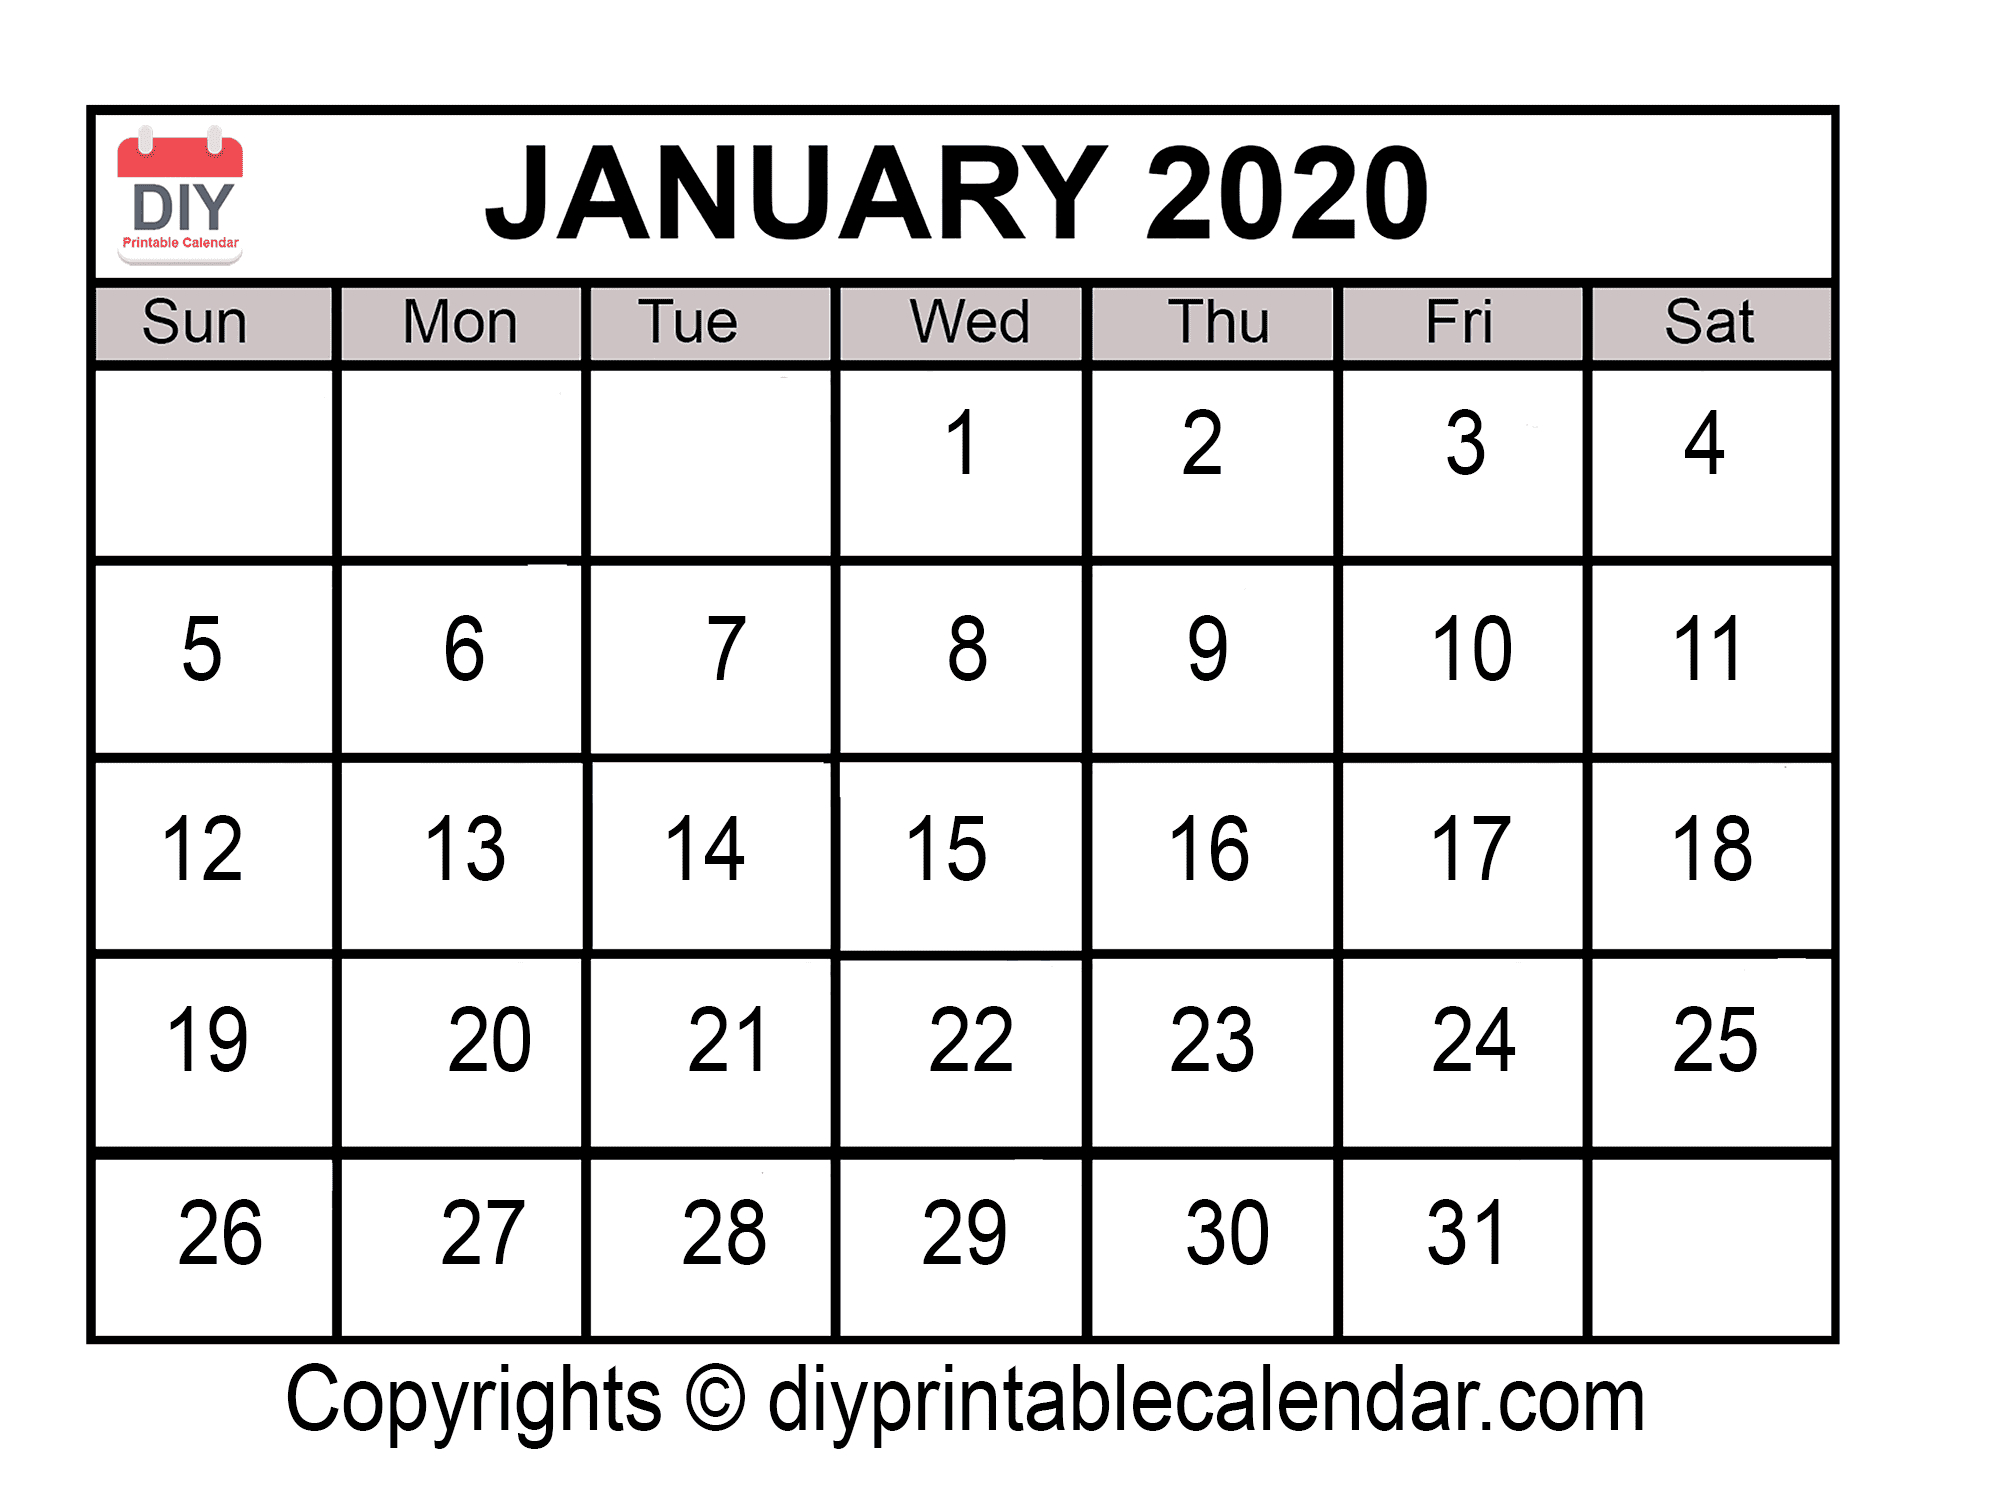 January 2020 Printable Calendar Template intended for Kalendar Kuda September 2020